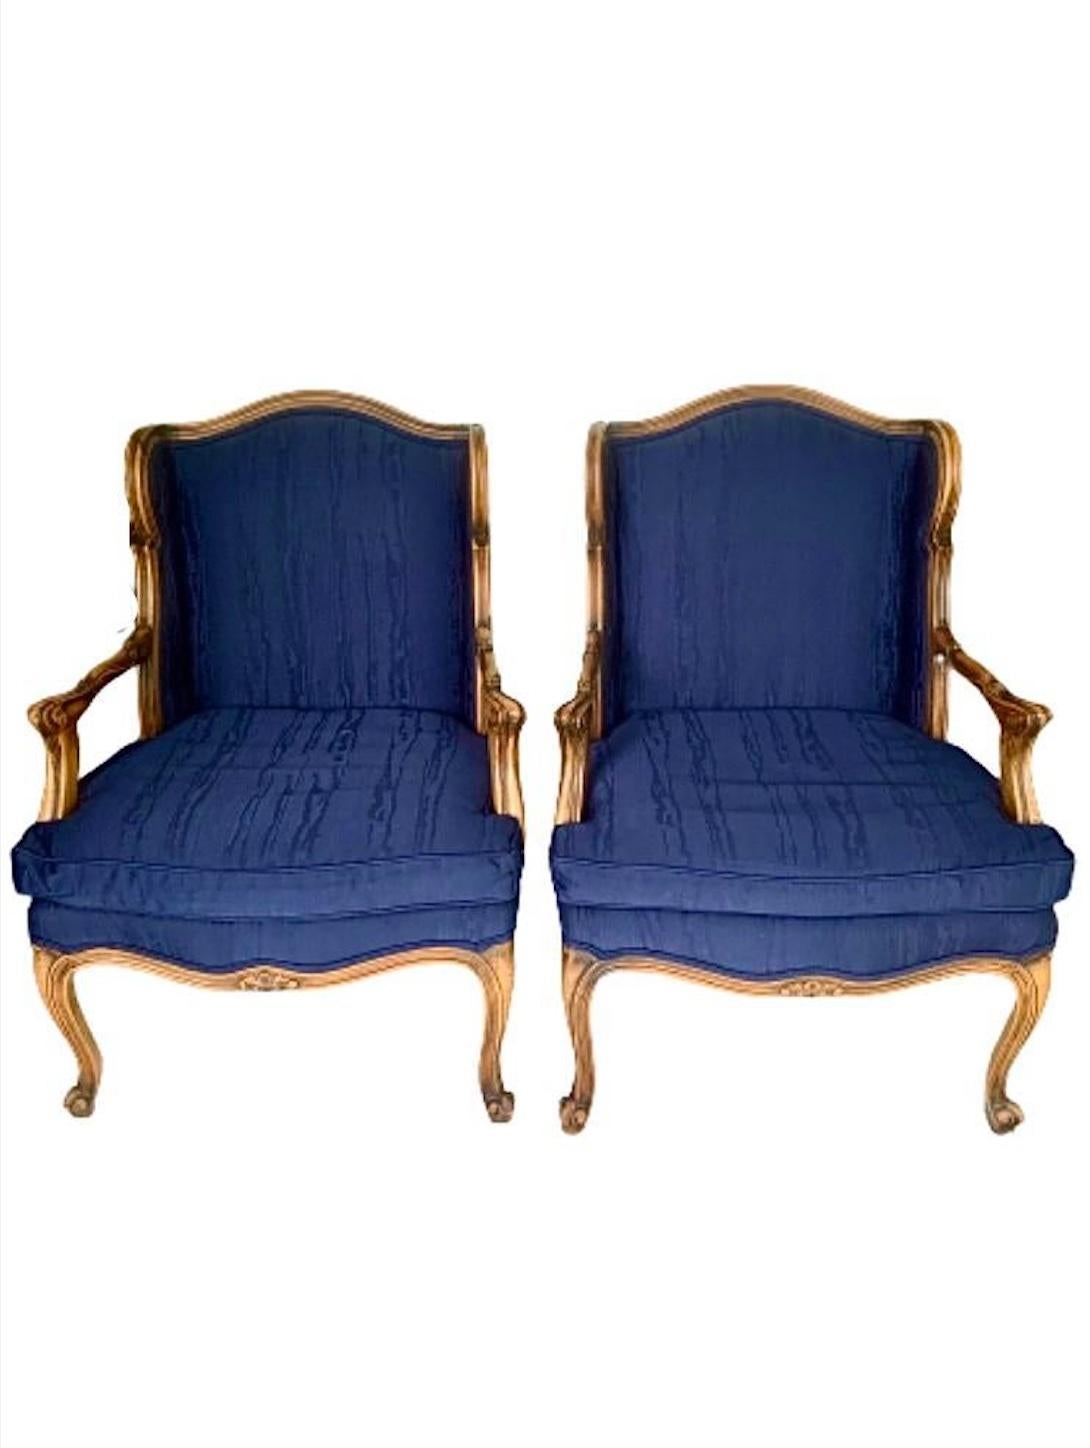 Ein Paar atemberaubende Klubsessel oder Loungesessel im Stil Louis XV French Provincial.

Geschnitztes Nussbaumholz, mit tiefblauer, gemusterter Faux-Bois-Polsterung. 

Maße: 26,5 